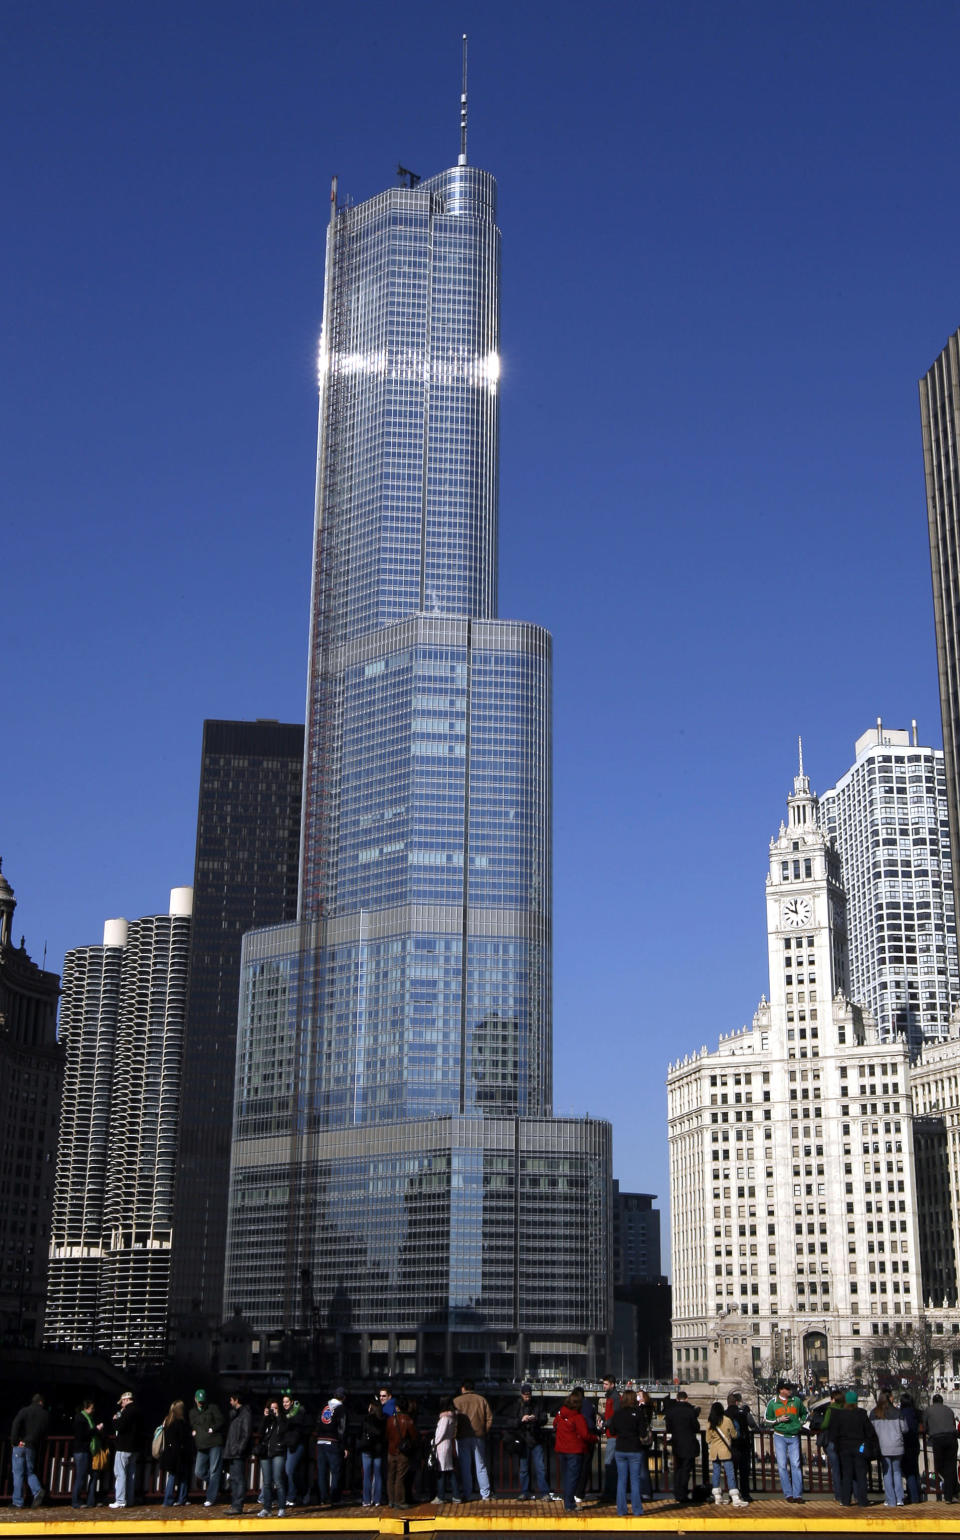 La torre Trump International Hotel, diseñado por Skidmore, Owings & Merril, en Chicago, ocupa el puesto 12 con 423 metros (1,389 pies). Jeff Haynes/ Reuters